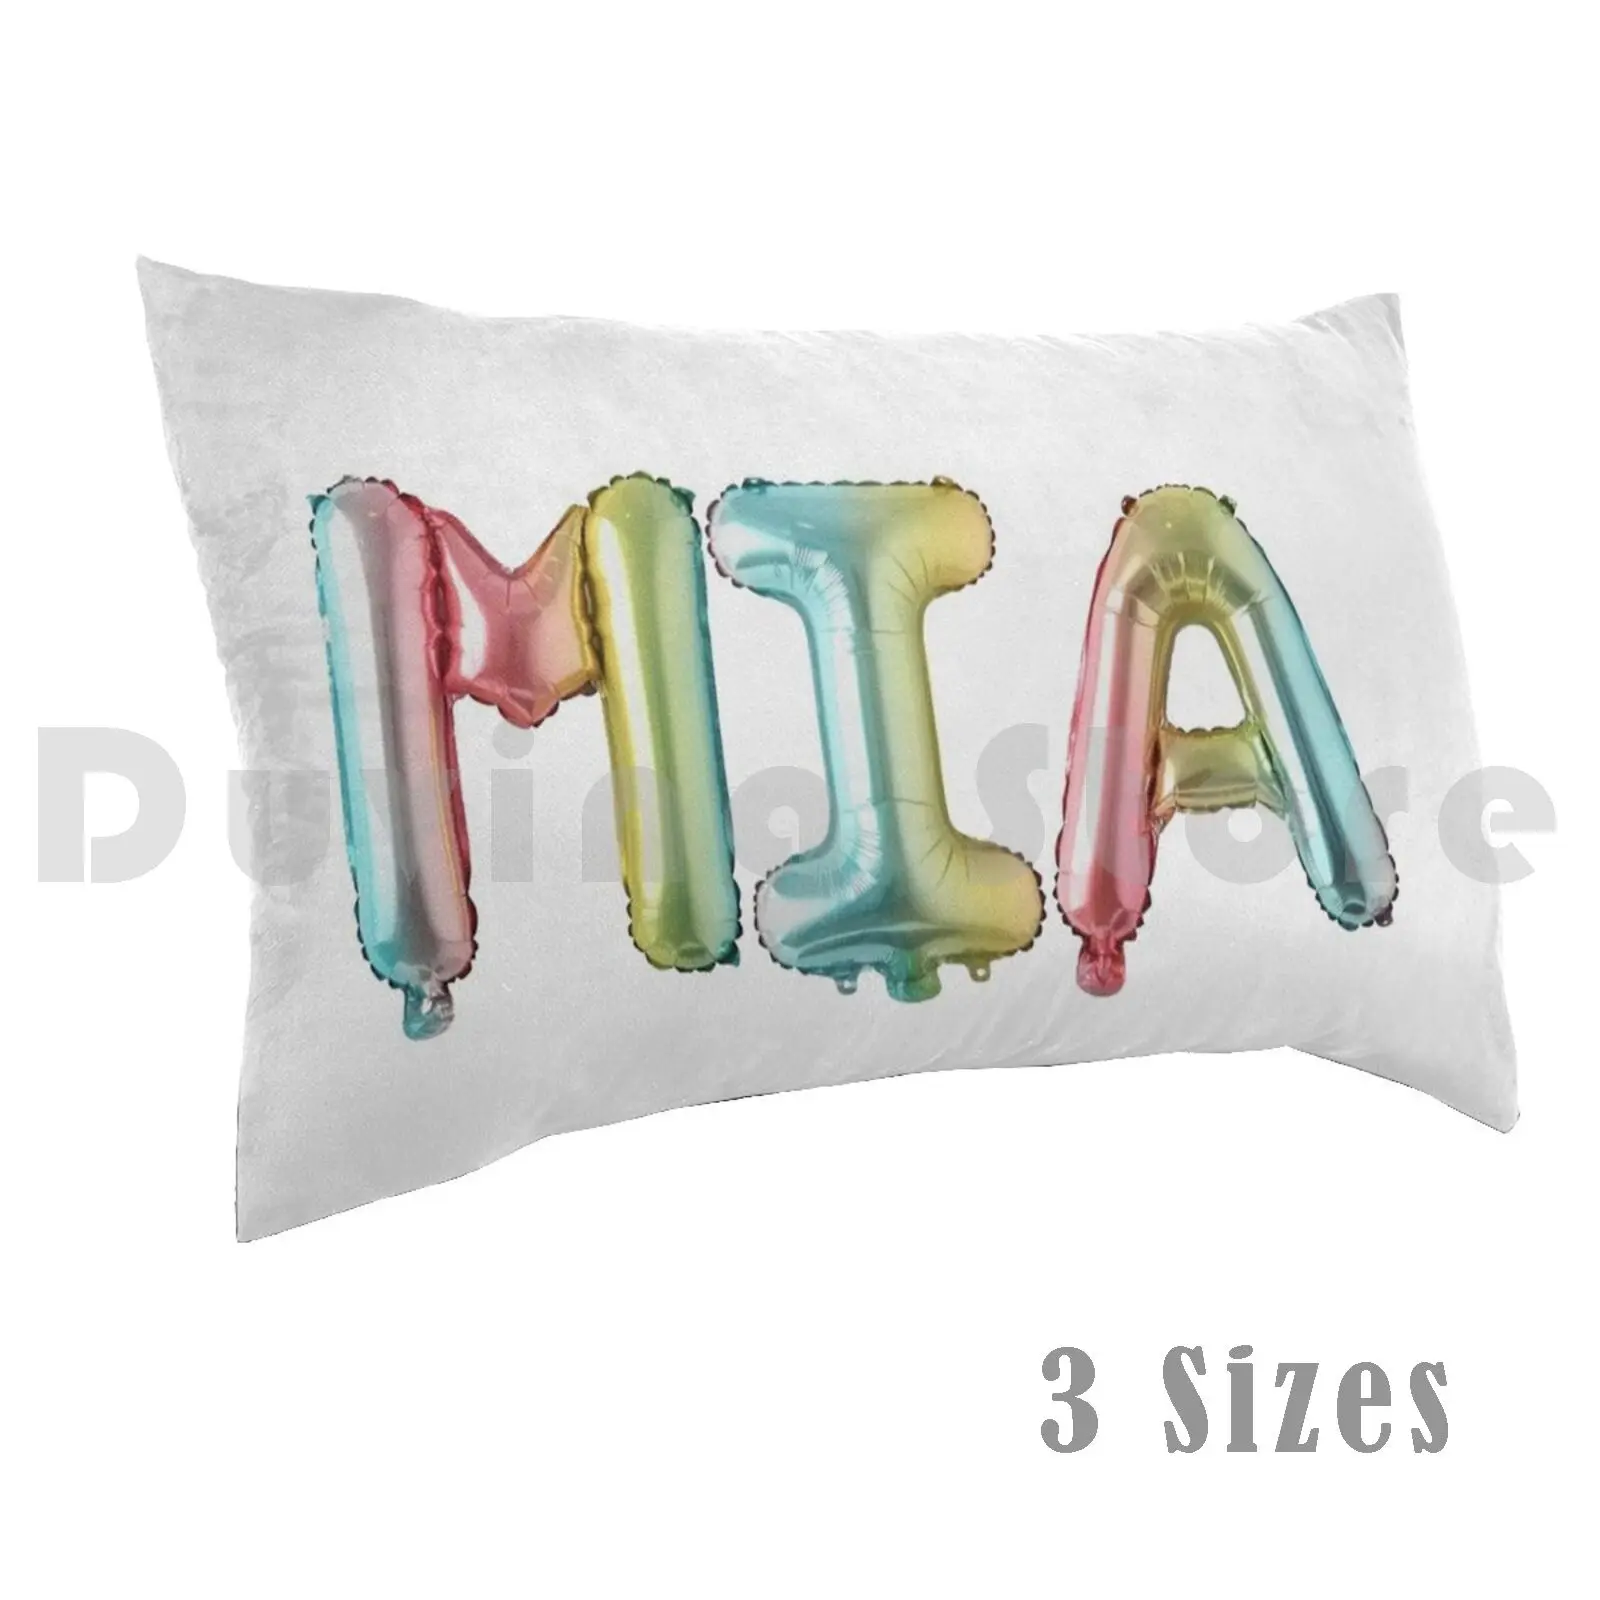 

Наволочка с подушкой Mia DIY 40x60 2696, популярный тренд с юмором колледжа Vsco воздушные шары, необходимое индивидуальное имя